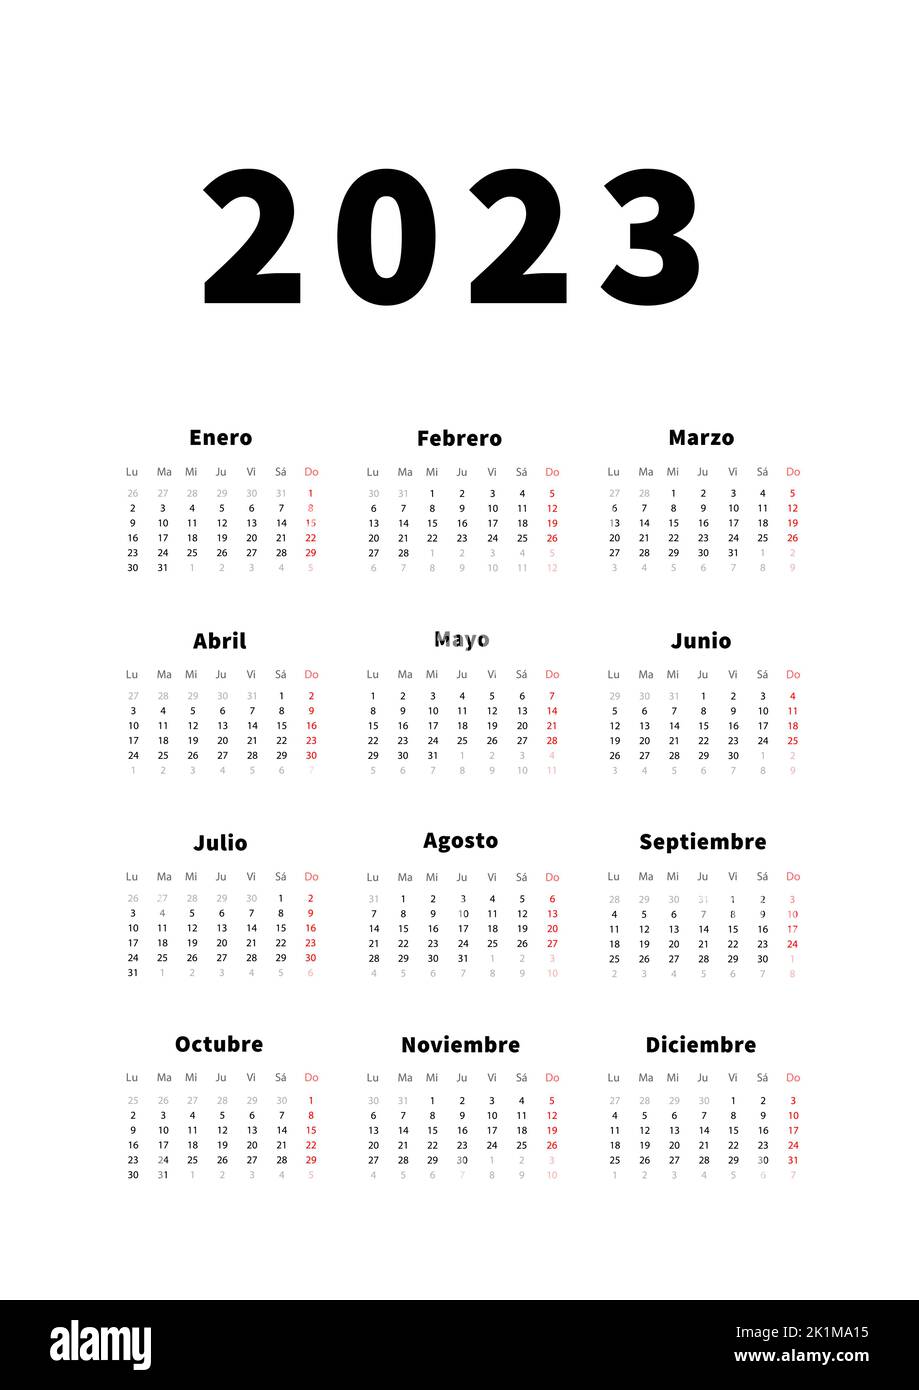 Spanish calendar hi